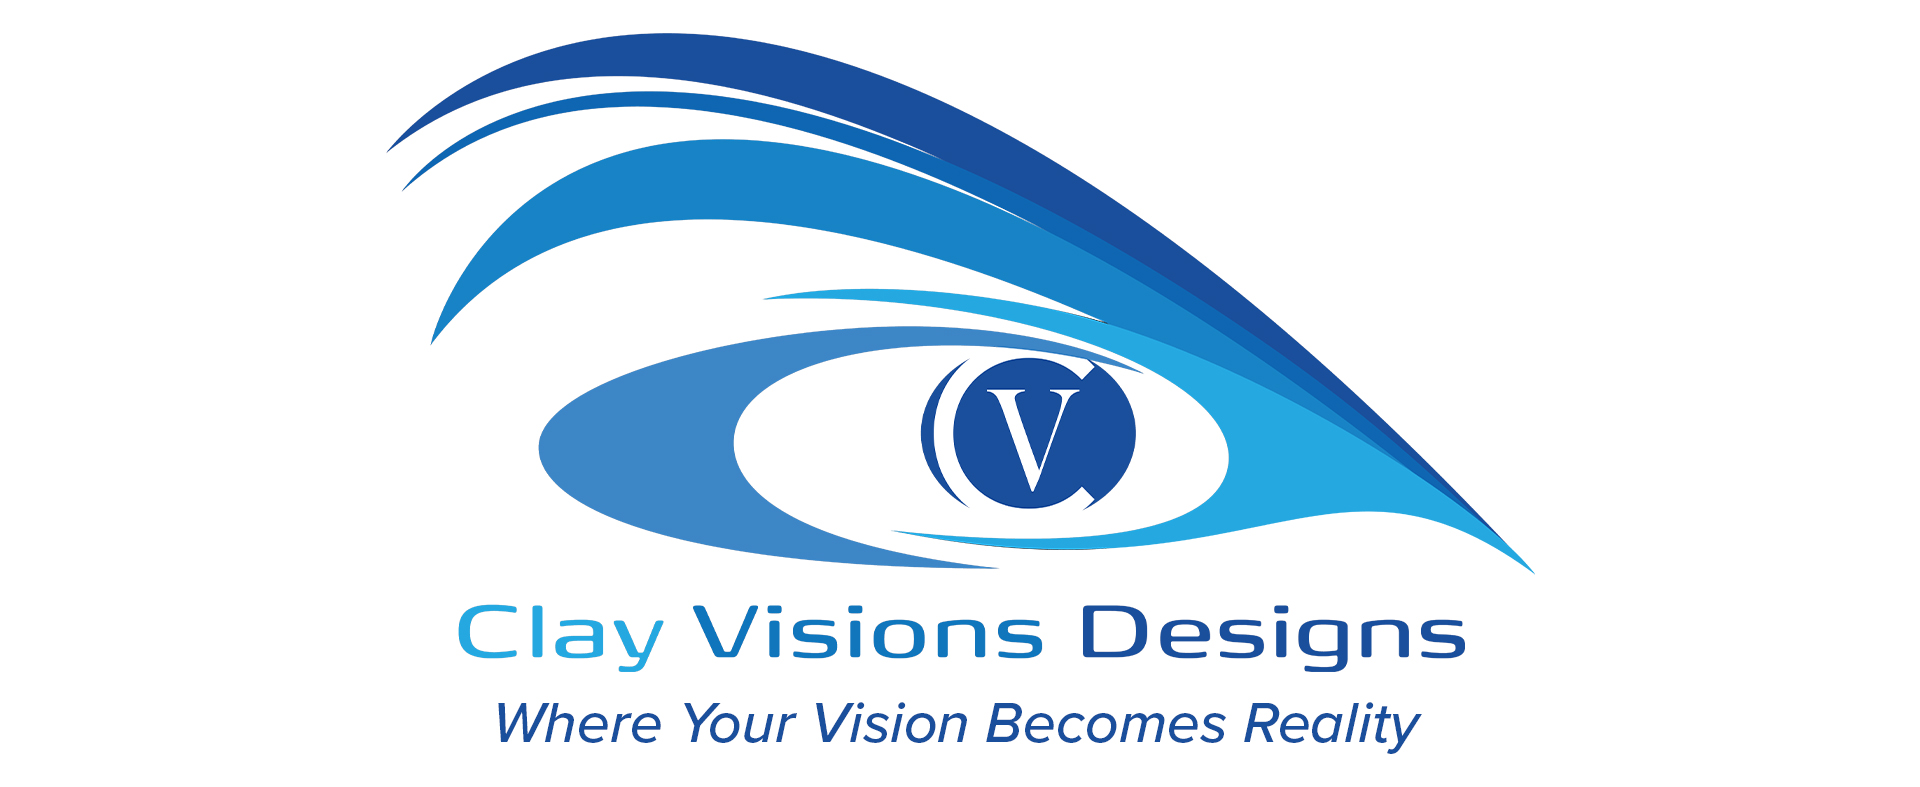 Clay Visions Designs Logo